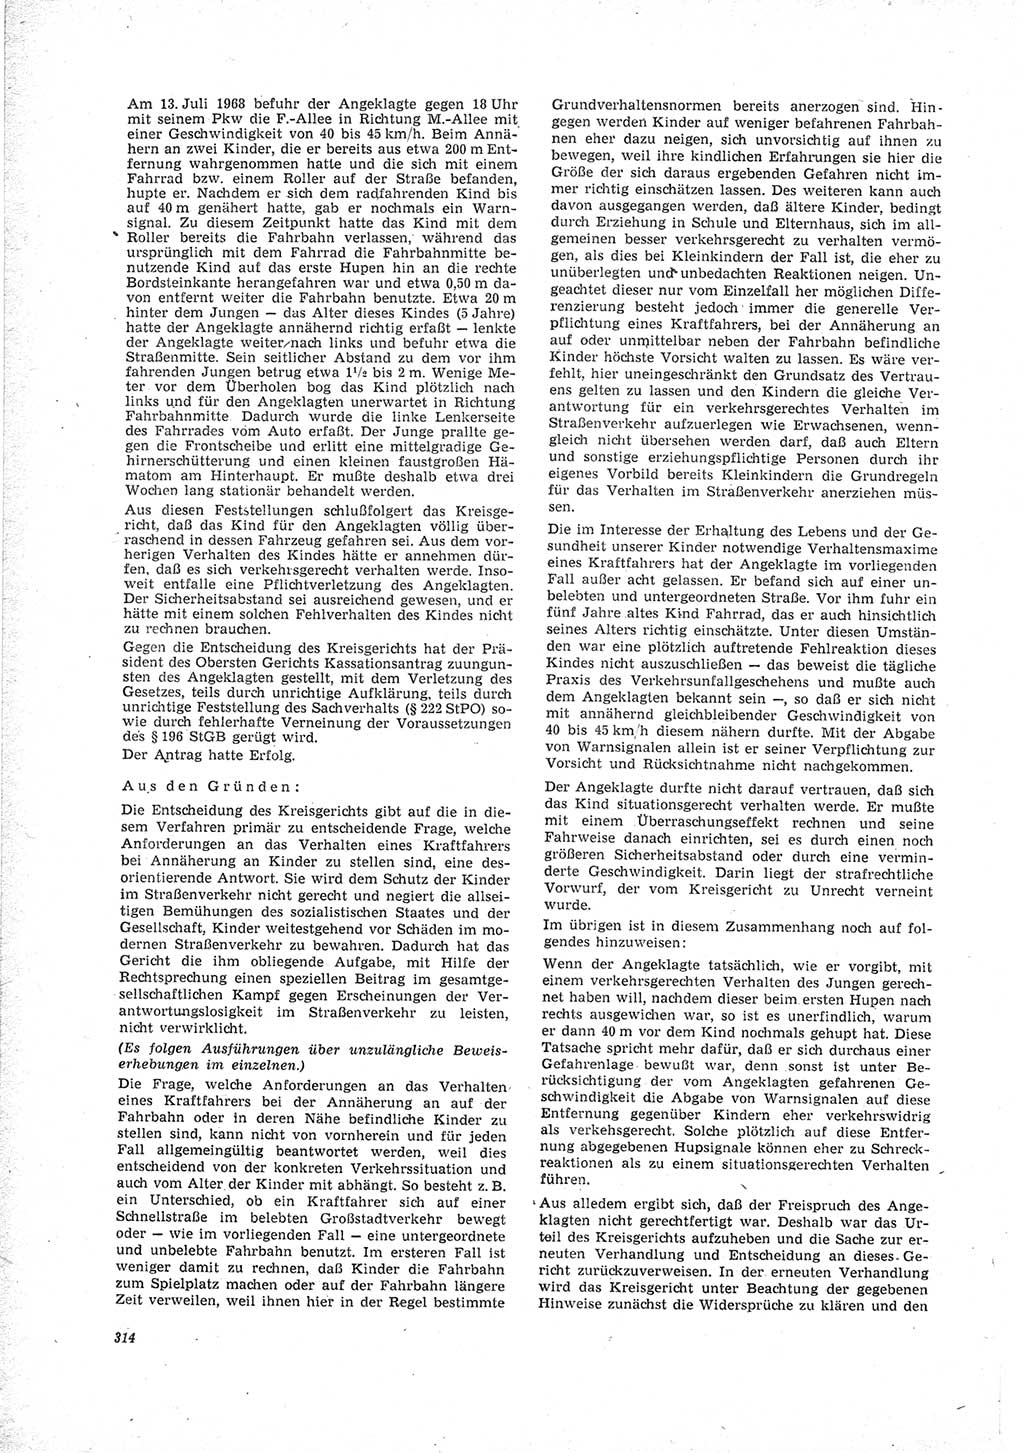 Neue Justiz (NJ), Zeitschrift für Recht und Rechtswissenschaft [Deutsche Demokratische Republik (DDR)], 23. Jahrgang 1969, Seite 314 (NJ DDR 1969, S. 314)